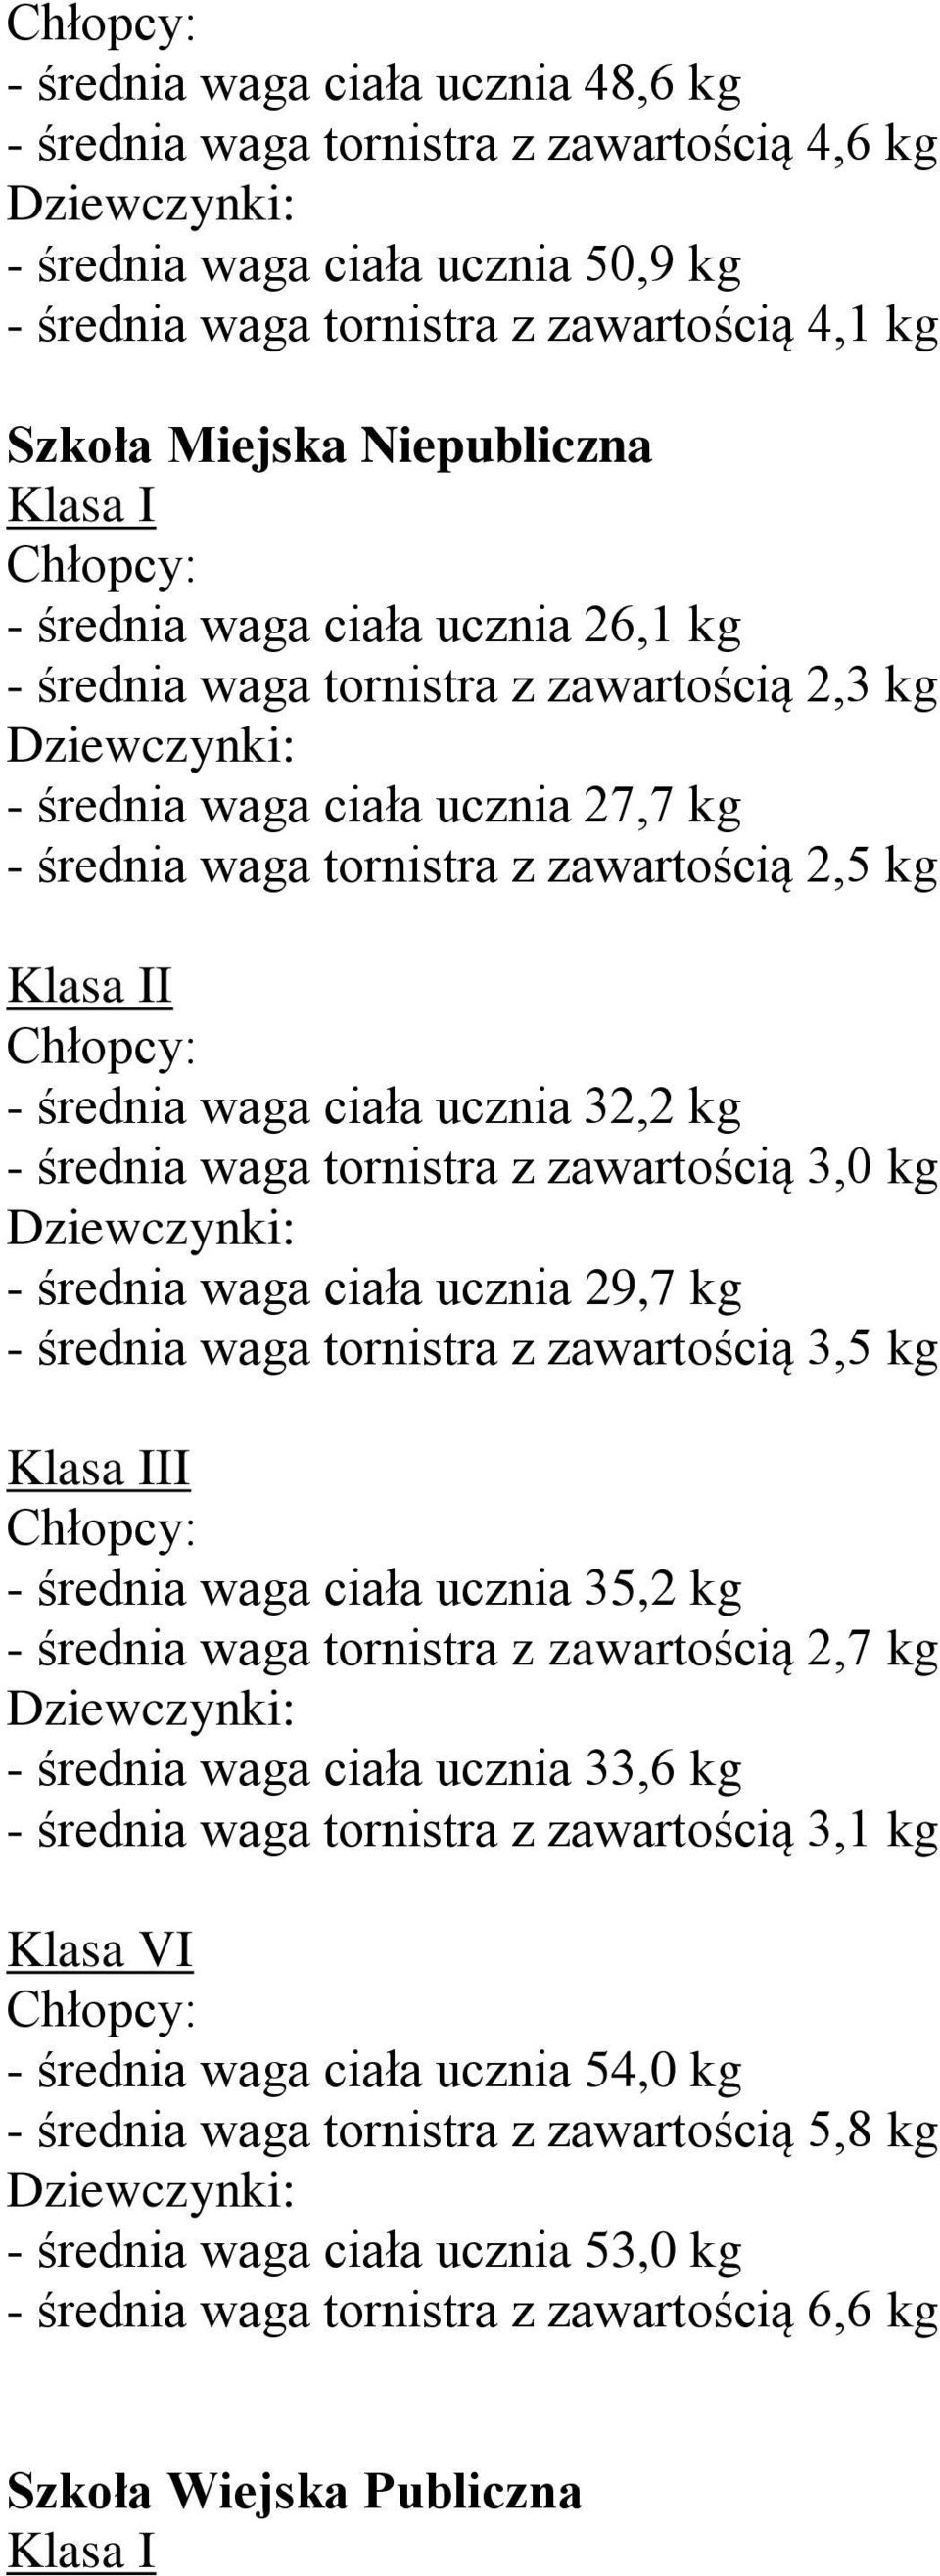 kg - średnia waga ciała ucznia 29,7 kg - średnia waga tornistra z zawartością 3,5 kg I - średnia waga ciała ucznia 35,2 kg - średnia waga tornistra z zawartością 2,7 kg - średnia waga ciała